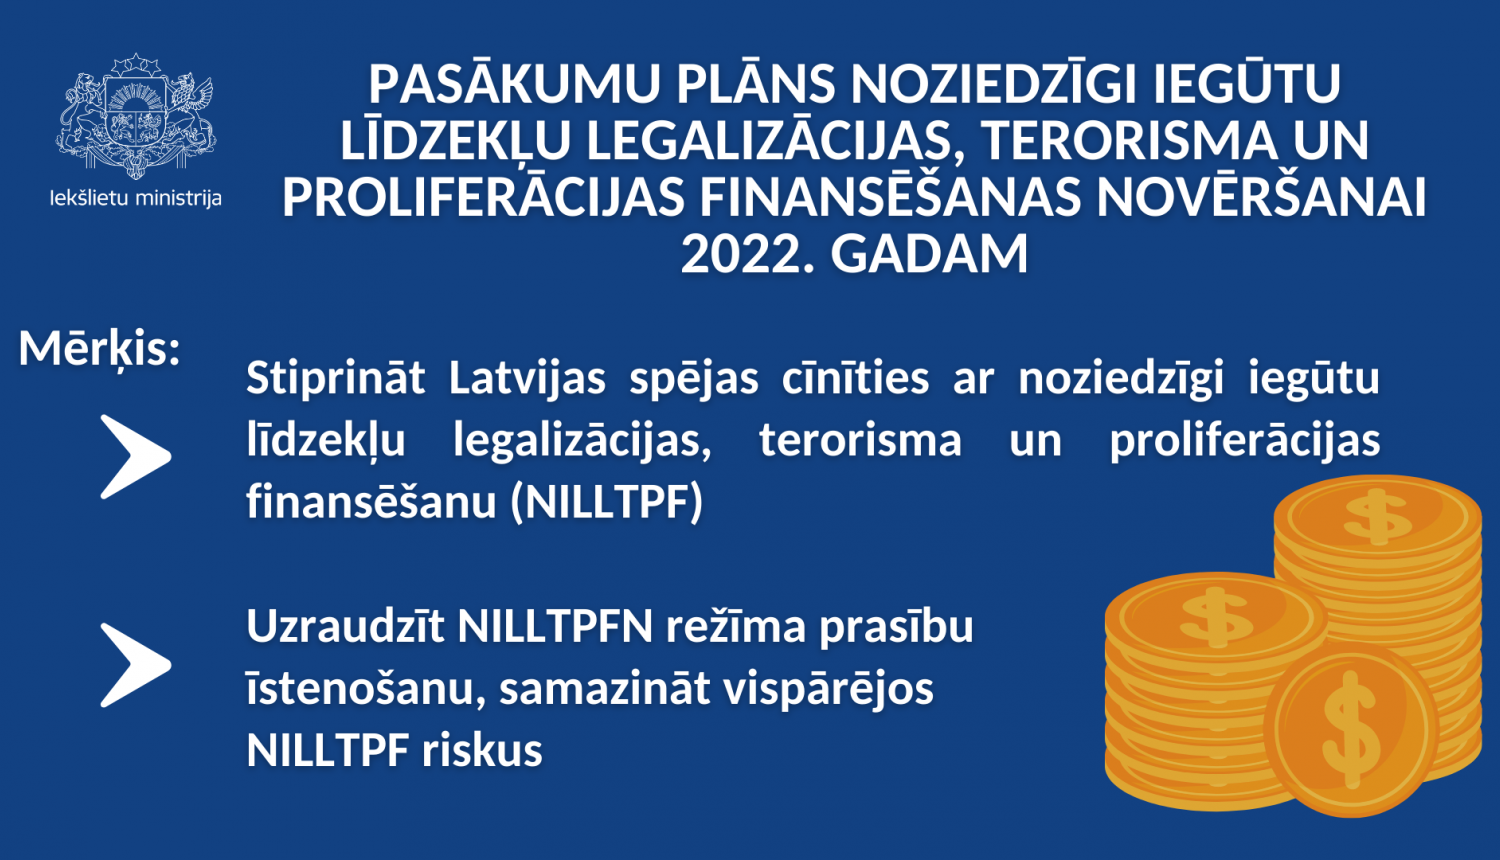 Pasākumu plāns noziedzīgi iegūtu līdzekļu legalizācijas, terorisma un proliferācijas finansēšanas novēršanai 2022. gadam